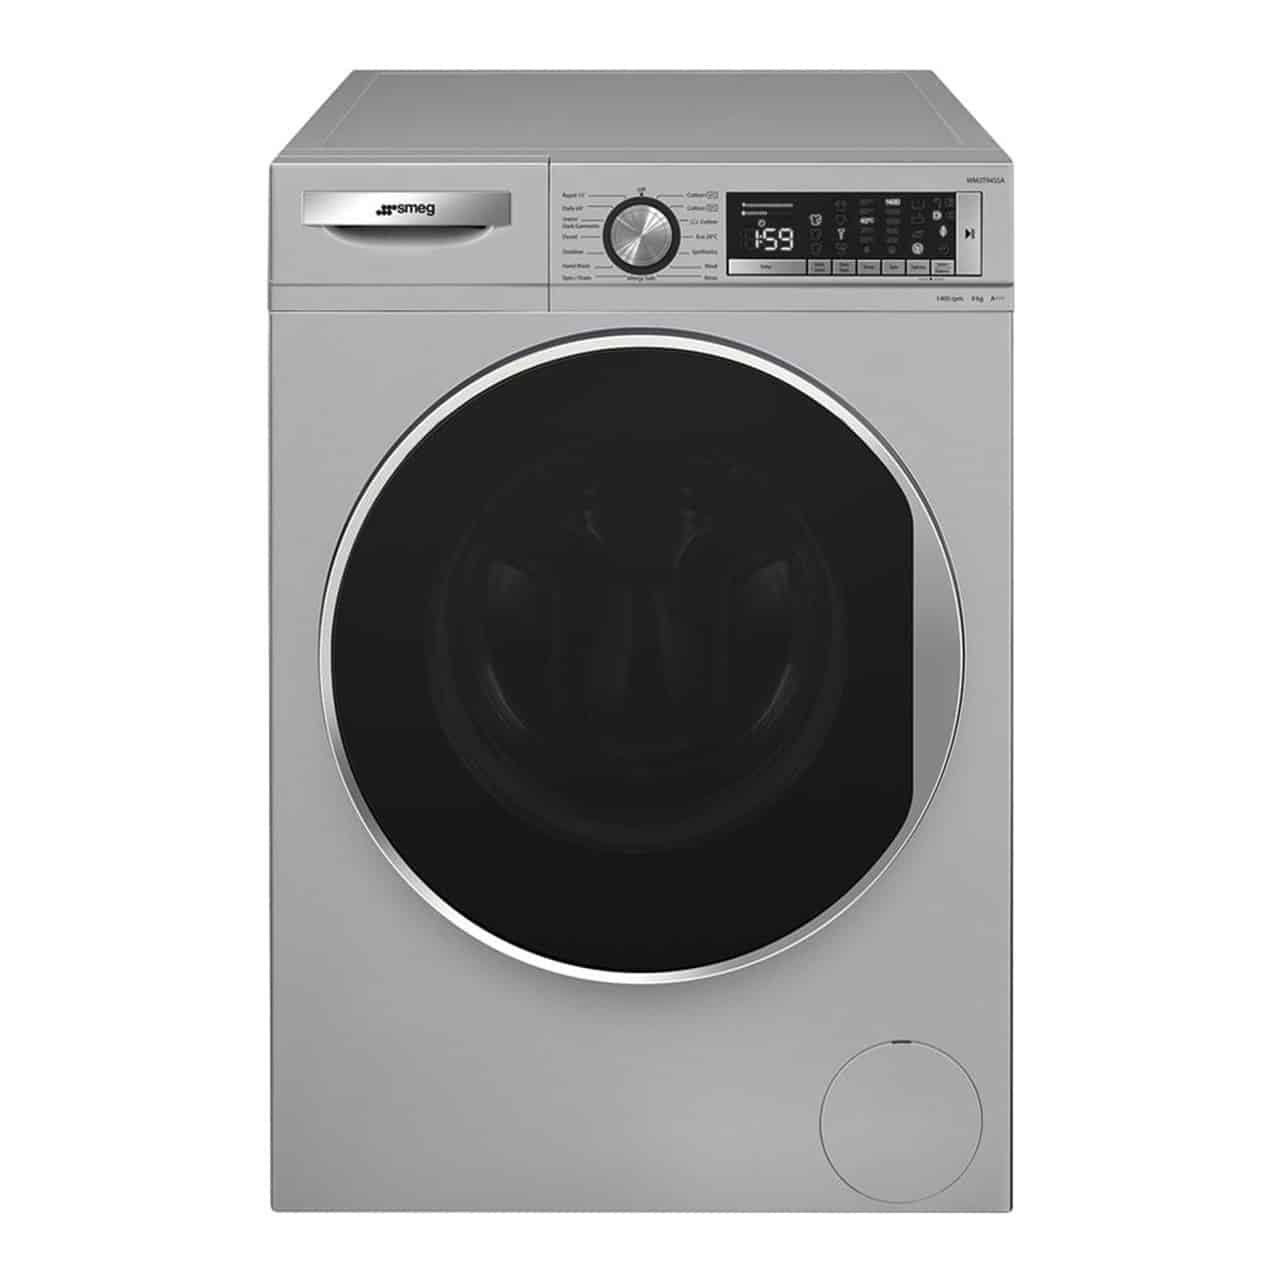 Smeg - 9kg Washing Machine Silver - WM3T94SSA